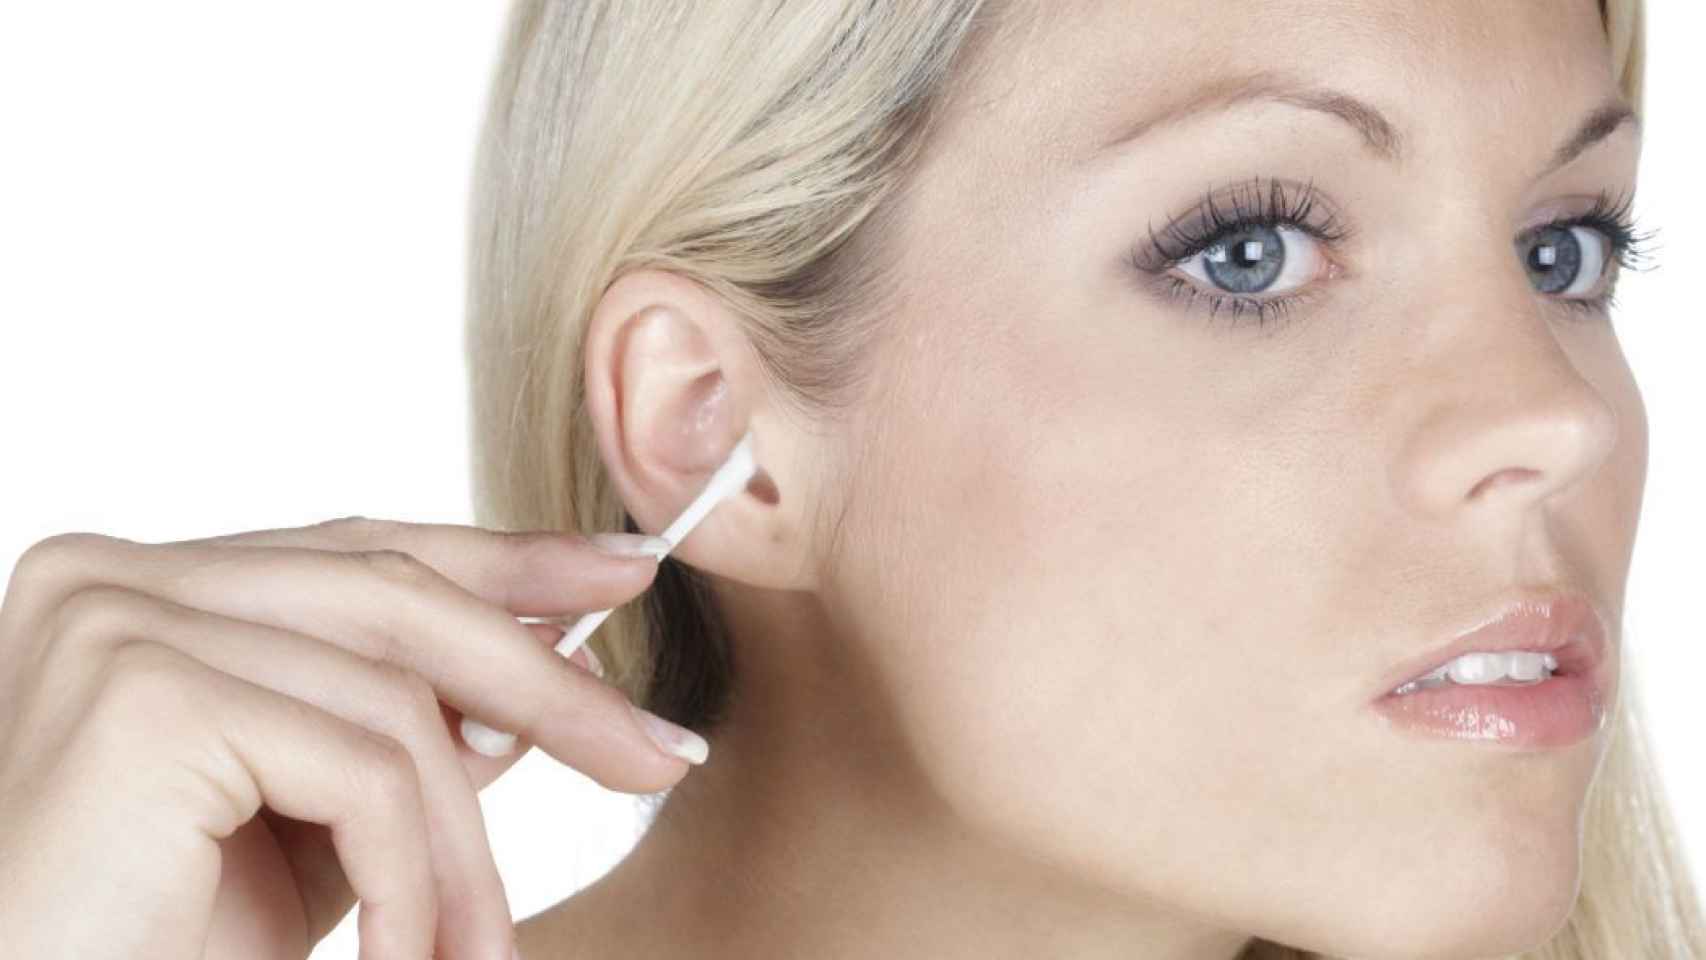 Te limpias los oídos con bastoncillos? No deberías hacerlo